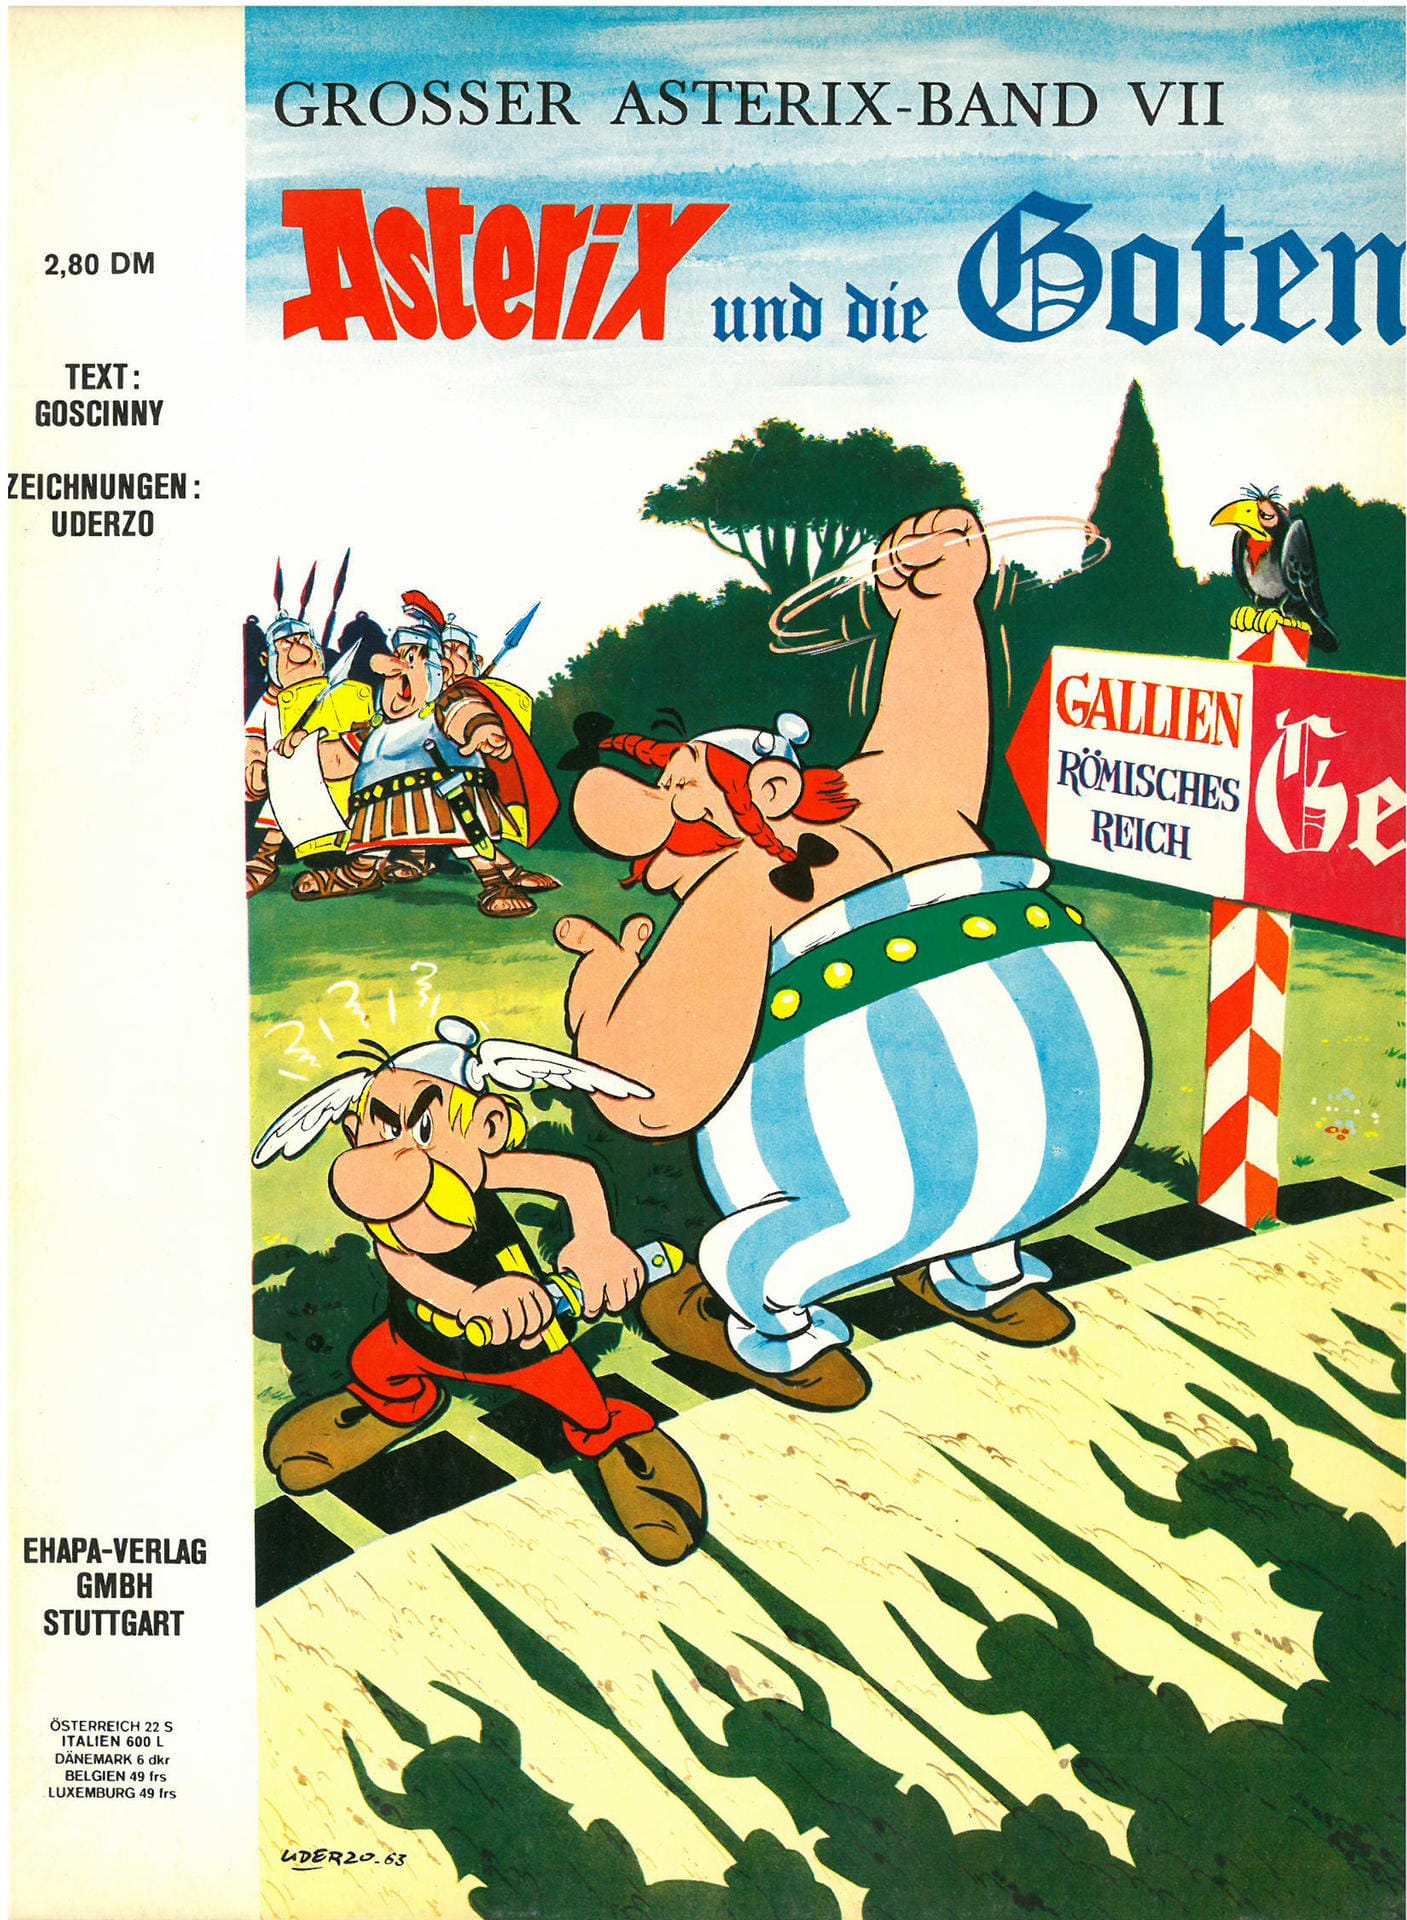 Die siebte Ausgabe: Asterix und die Goten. Der Druide Miraculix wird von Asterix und Obelix zum alljährlichen Druidenwettkampf begleitet. Dieser wird entführt. Asterix und Obelix machen sich auf, ihn zu retten. Dieser Band parodiert mehrere Klischees der Franzosen über die Deutschen.